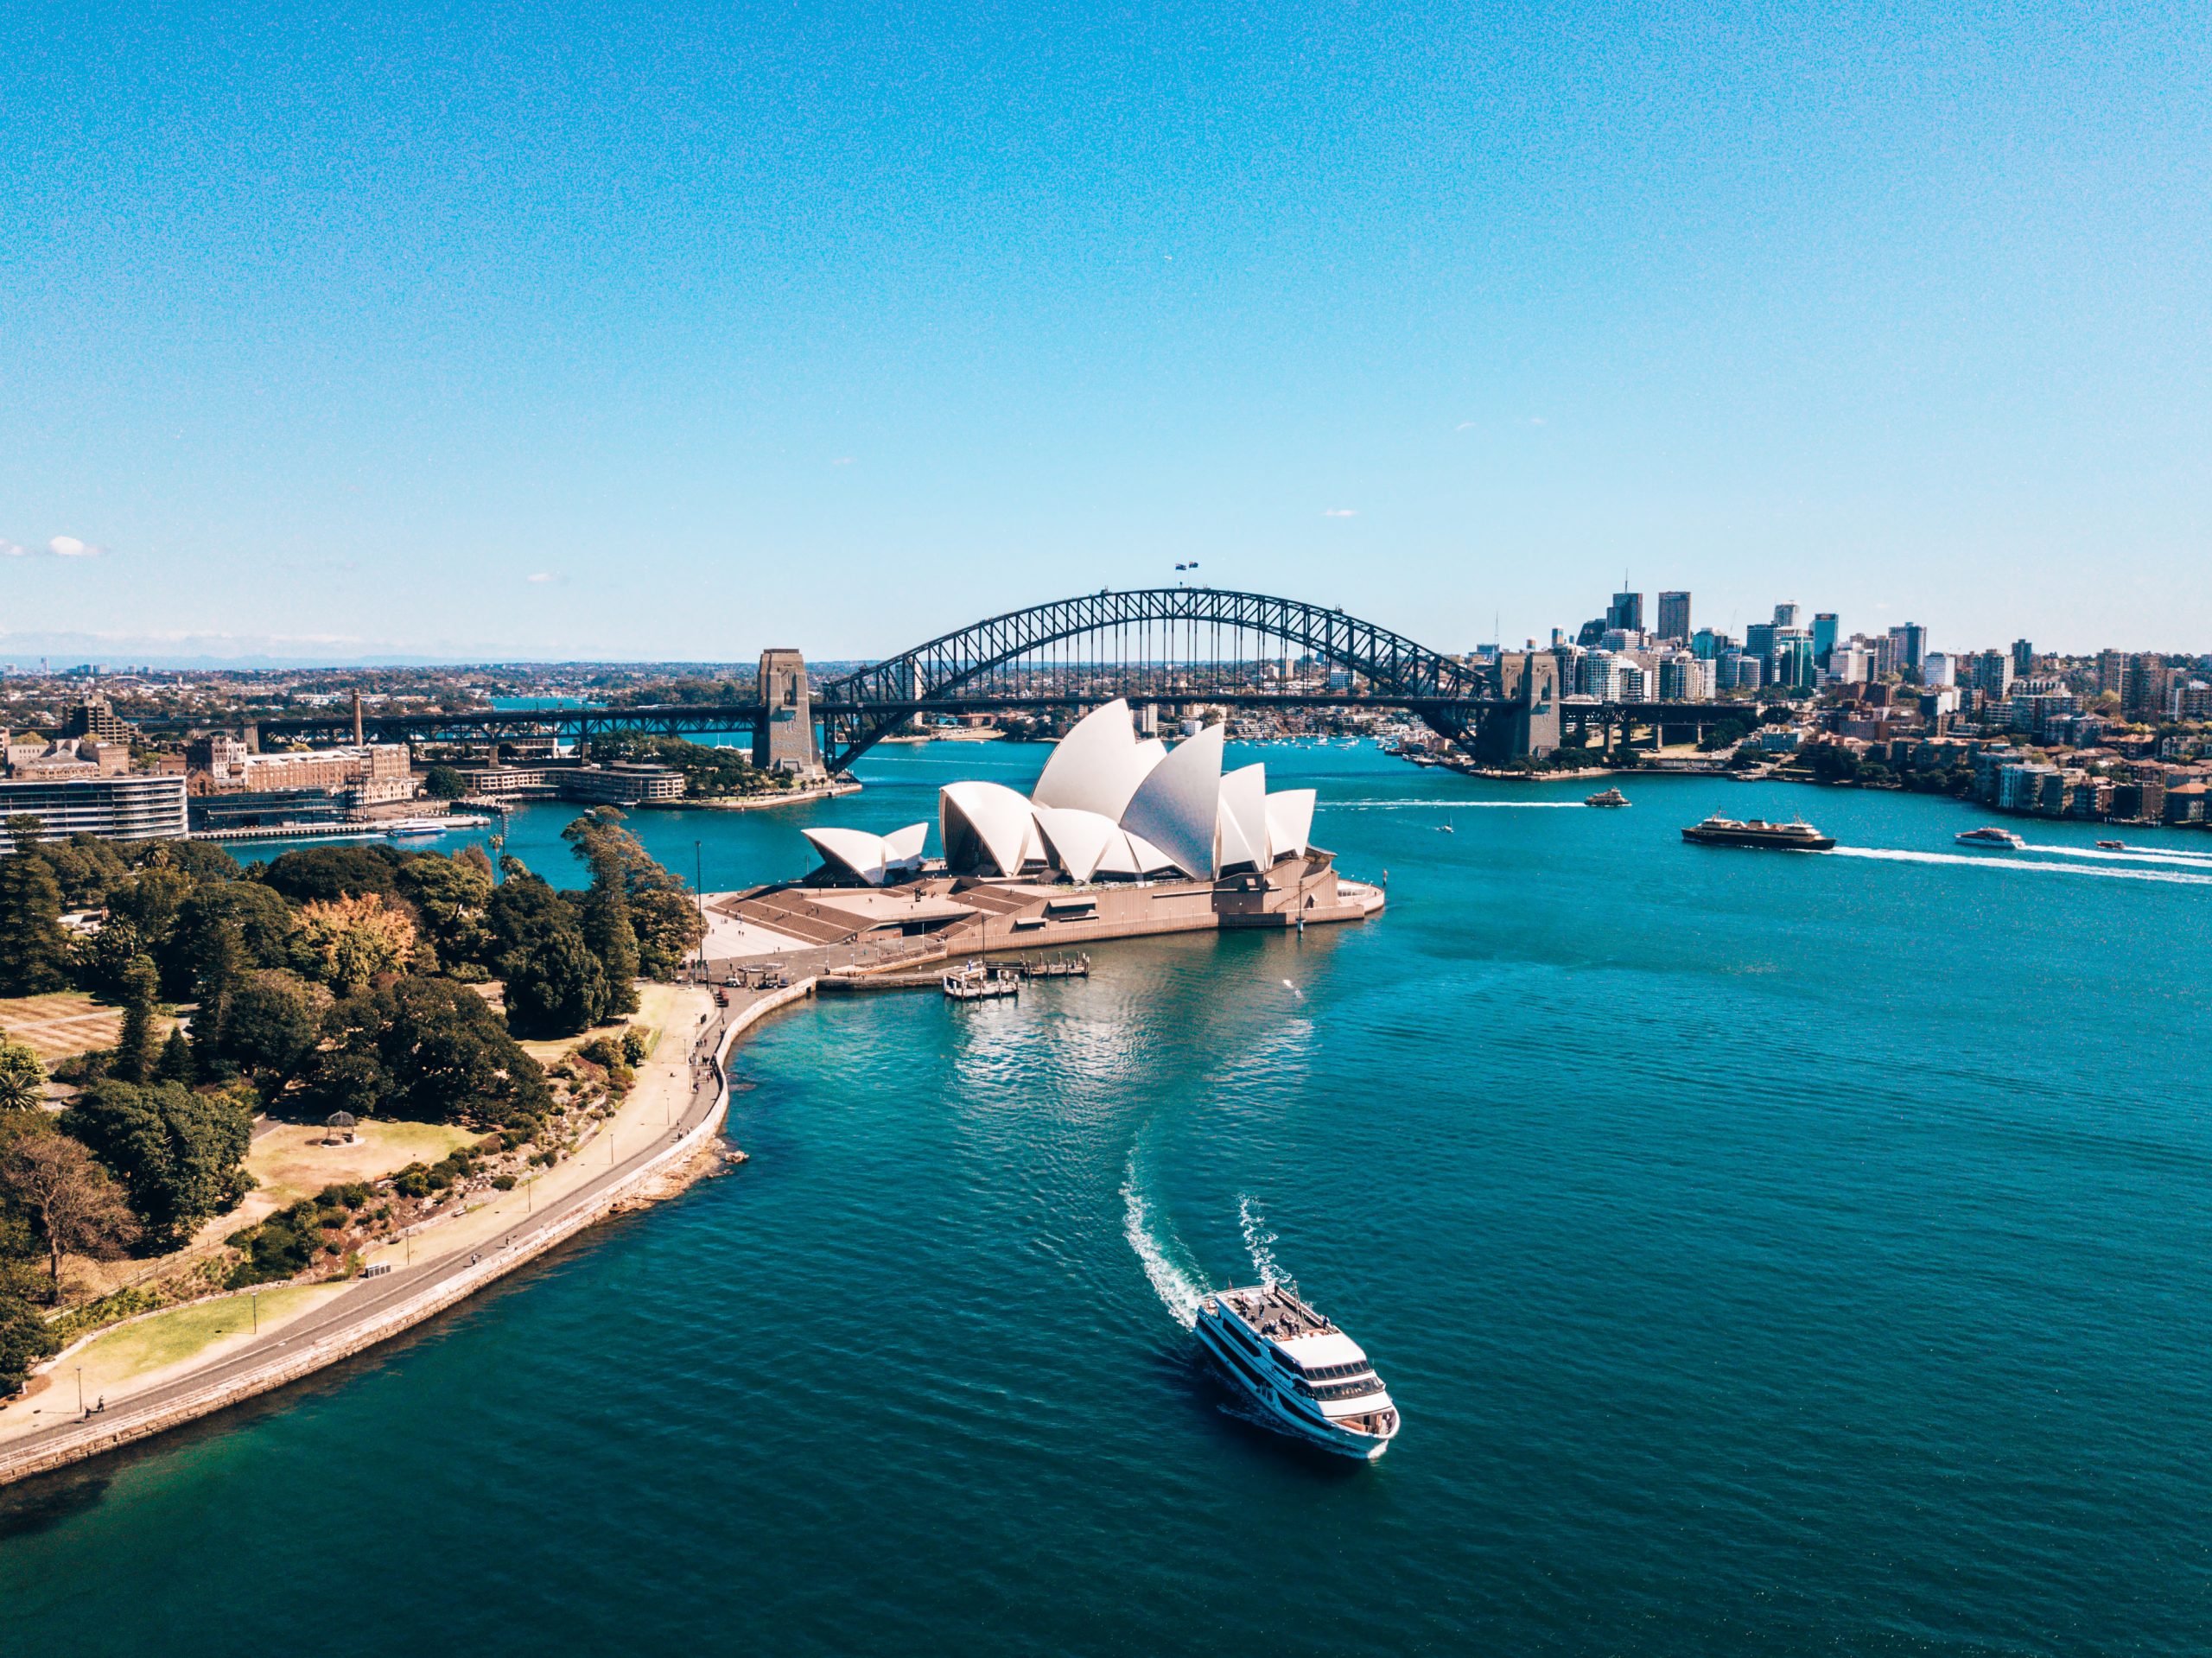 482 visa Australia: Short-term Sponsorship Visa holders may be able to apply for PR!